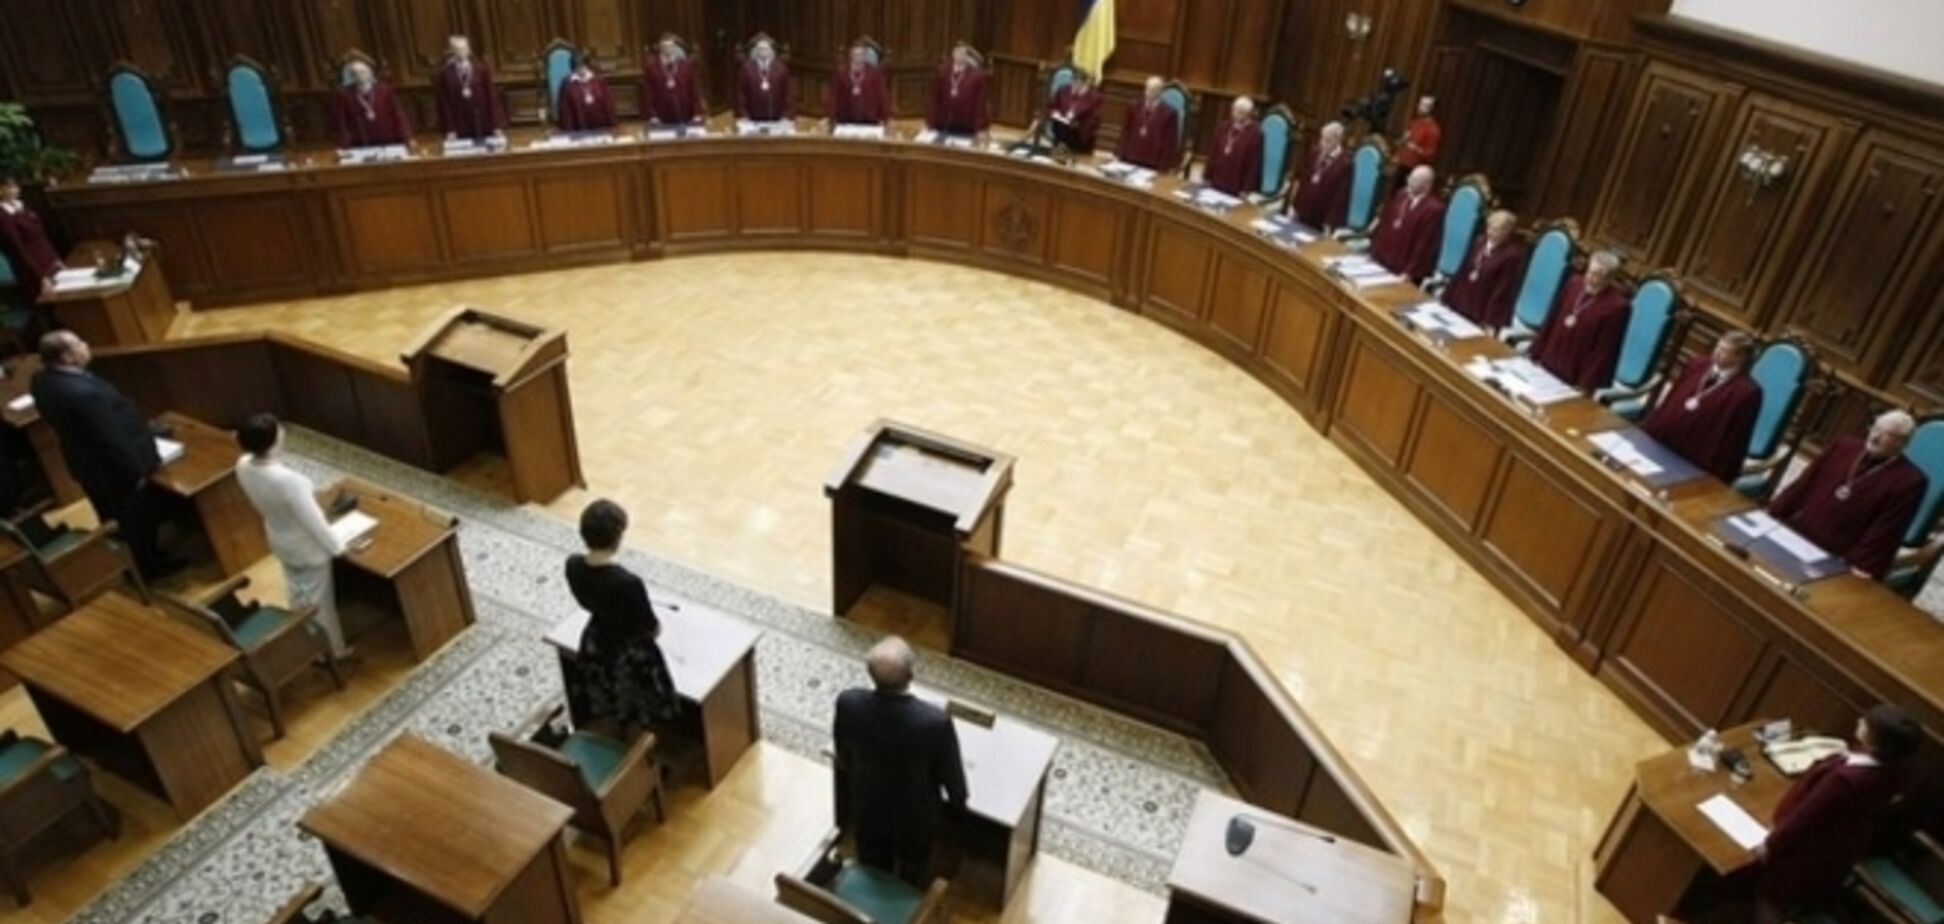 Избран новый состав Совета судей Украины